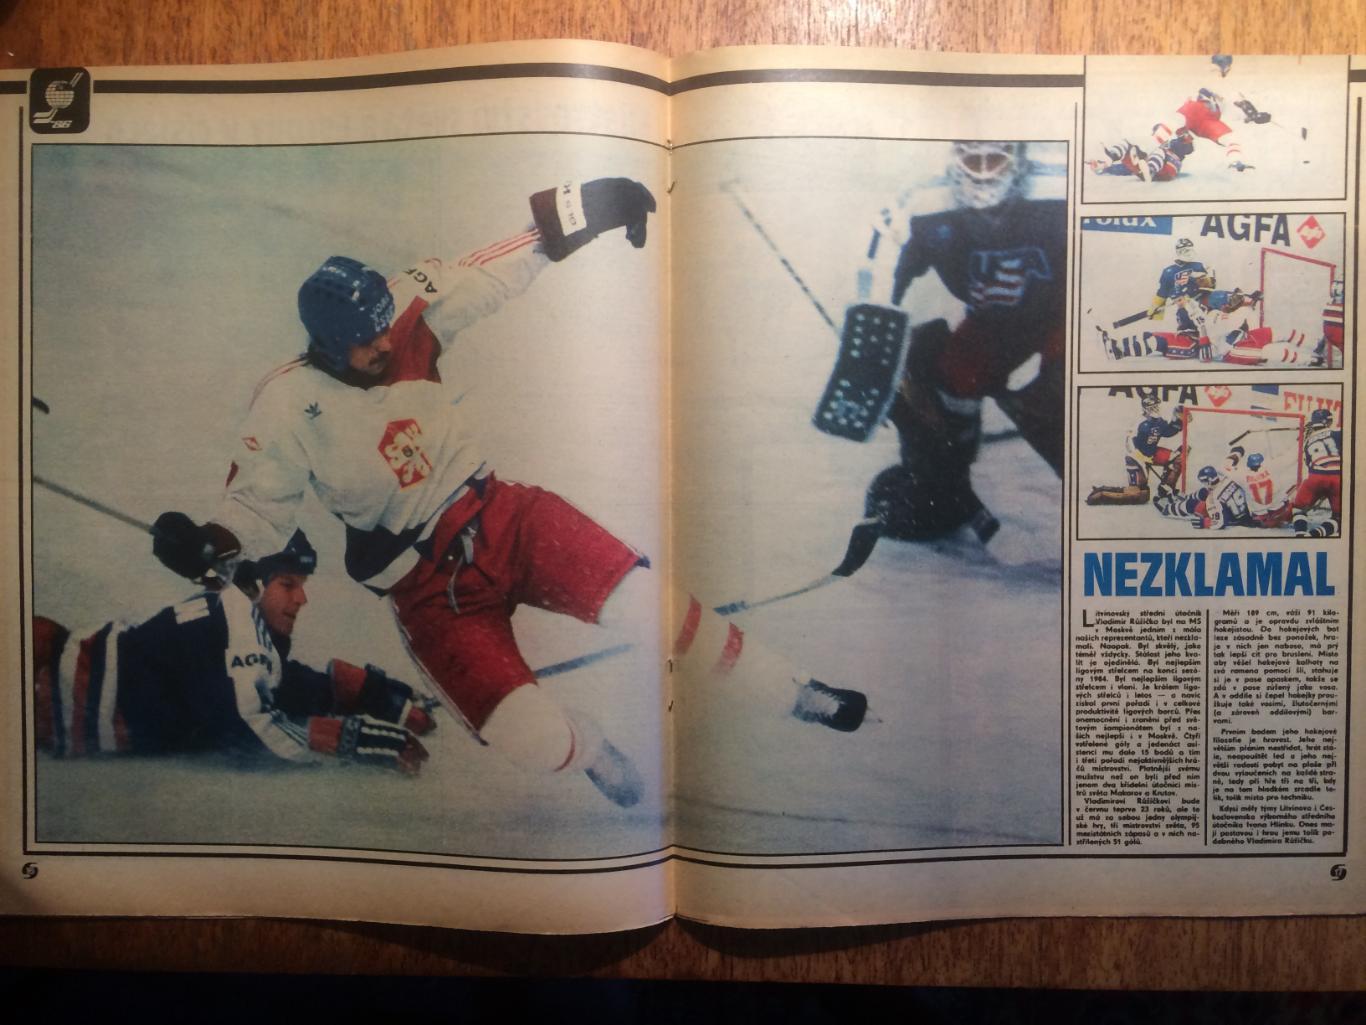 Журнал Стадион № 20 1986 Хоккей (ЧМ-86 Москва) постер СССР 6